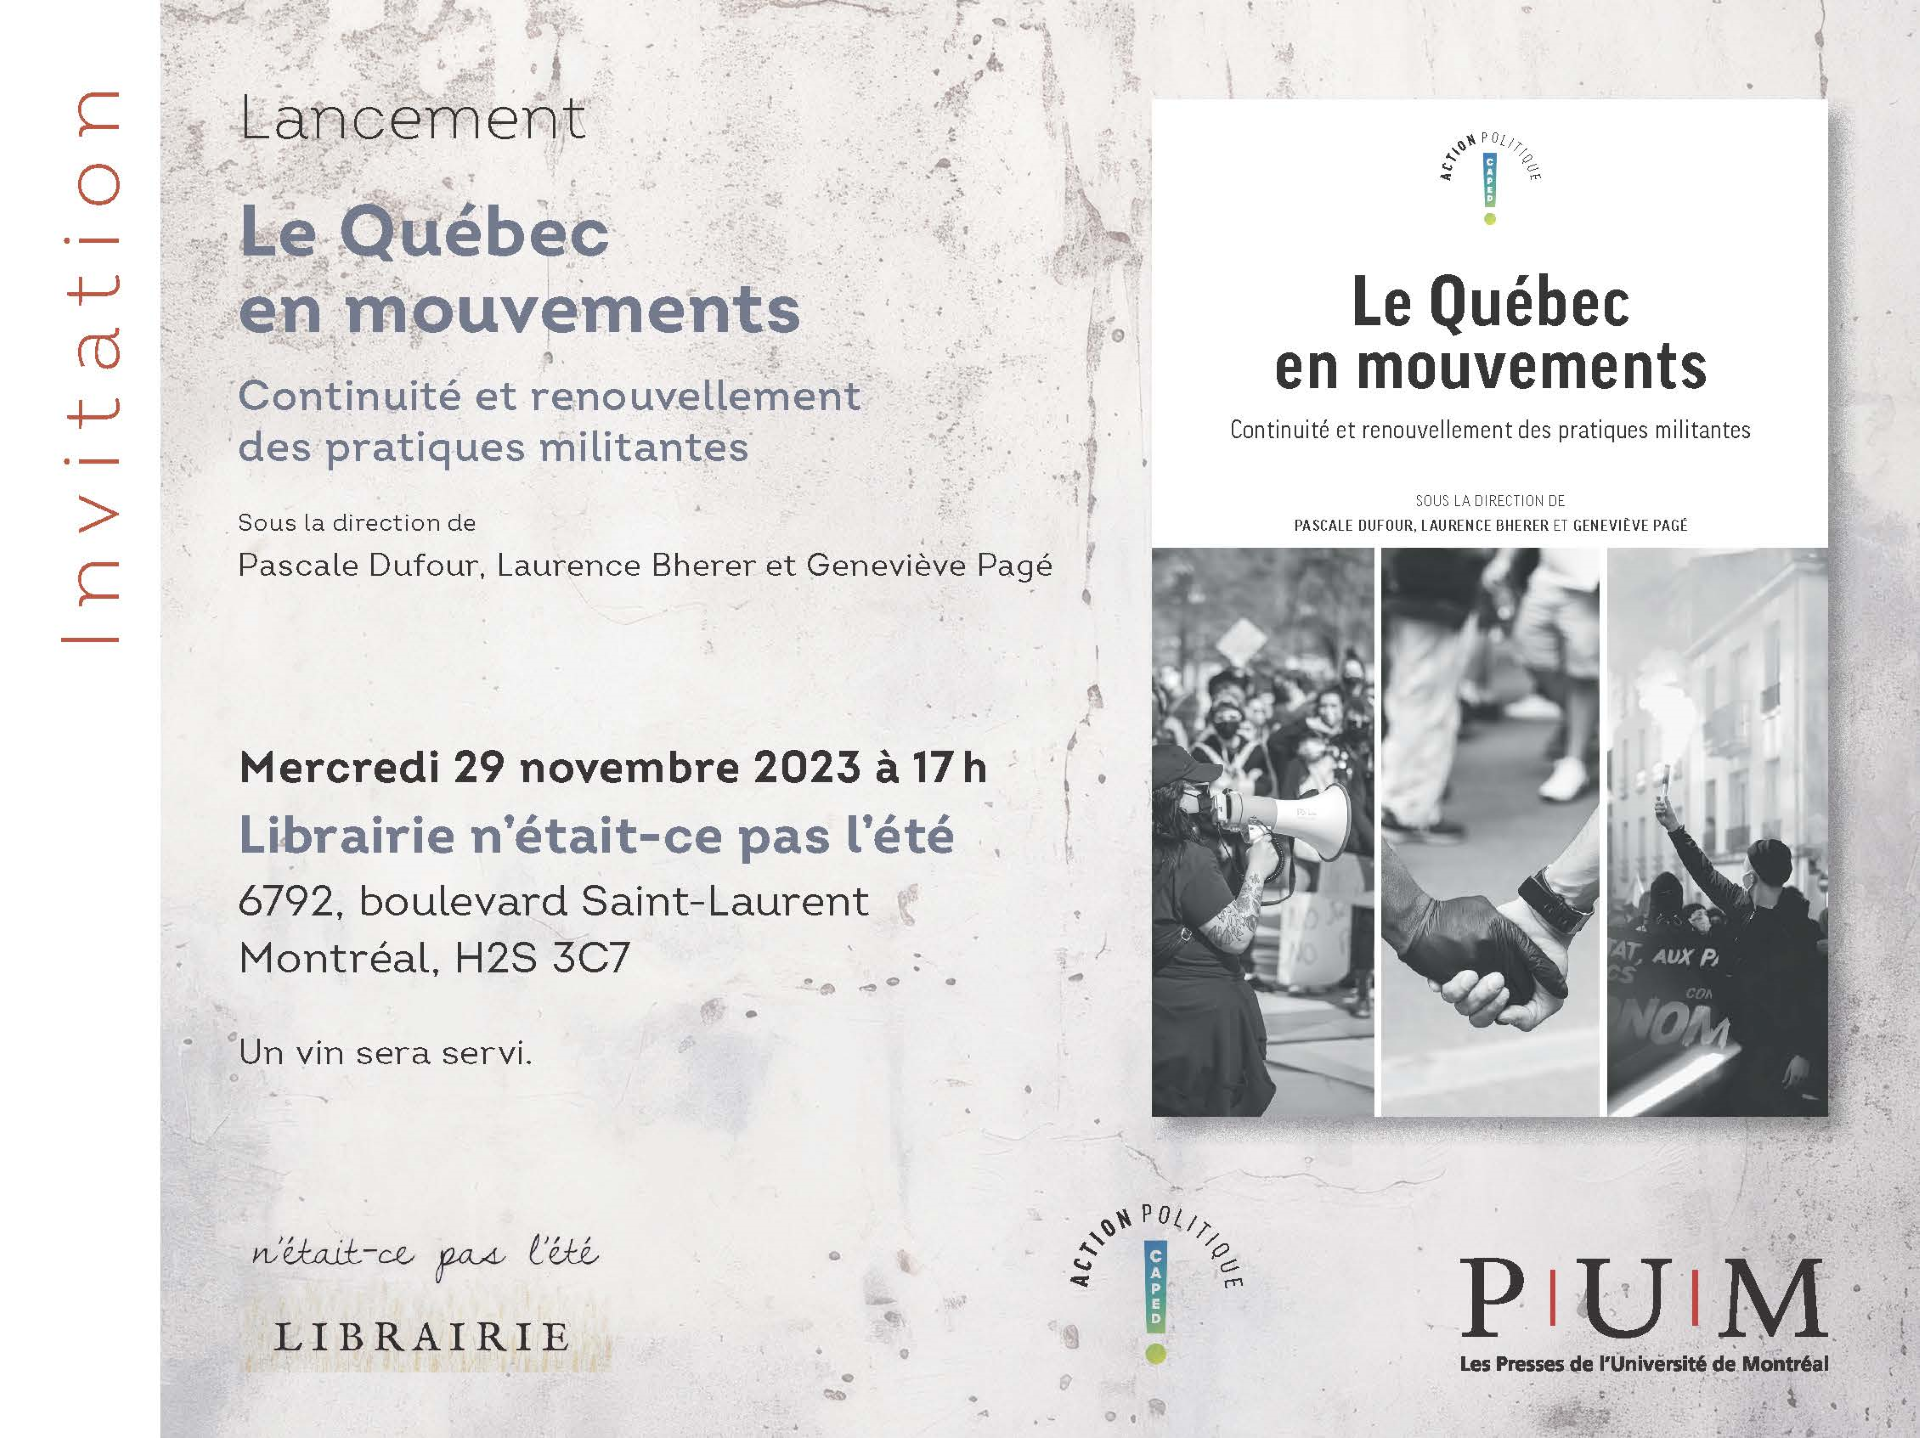 Sortie du livre Le Québec en mouvements, auquel 3 membres de la Chaire ont contribué dans 2 chapitres!